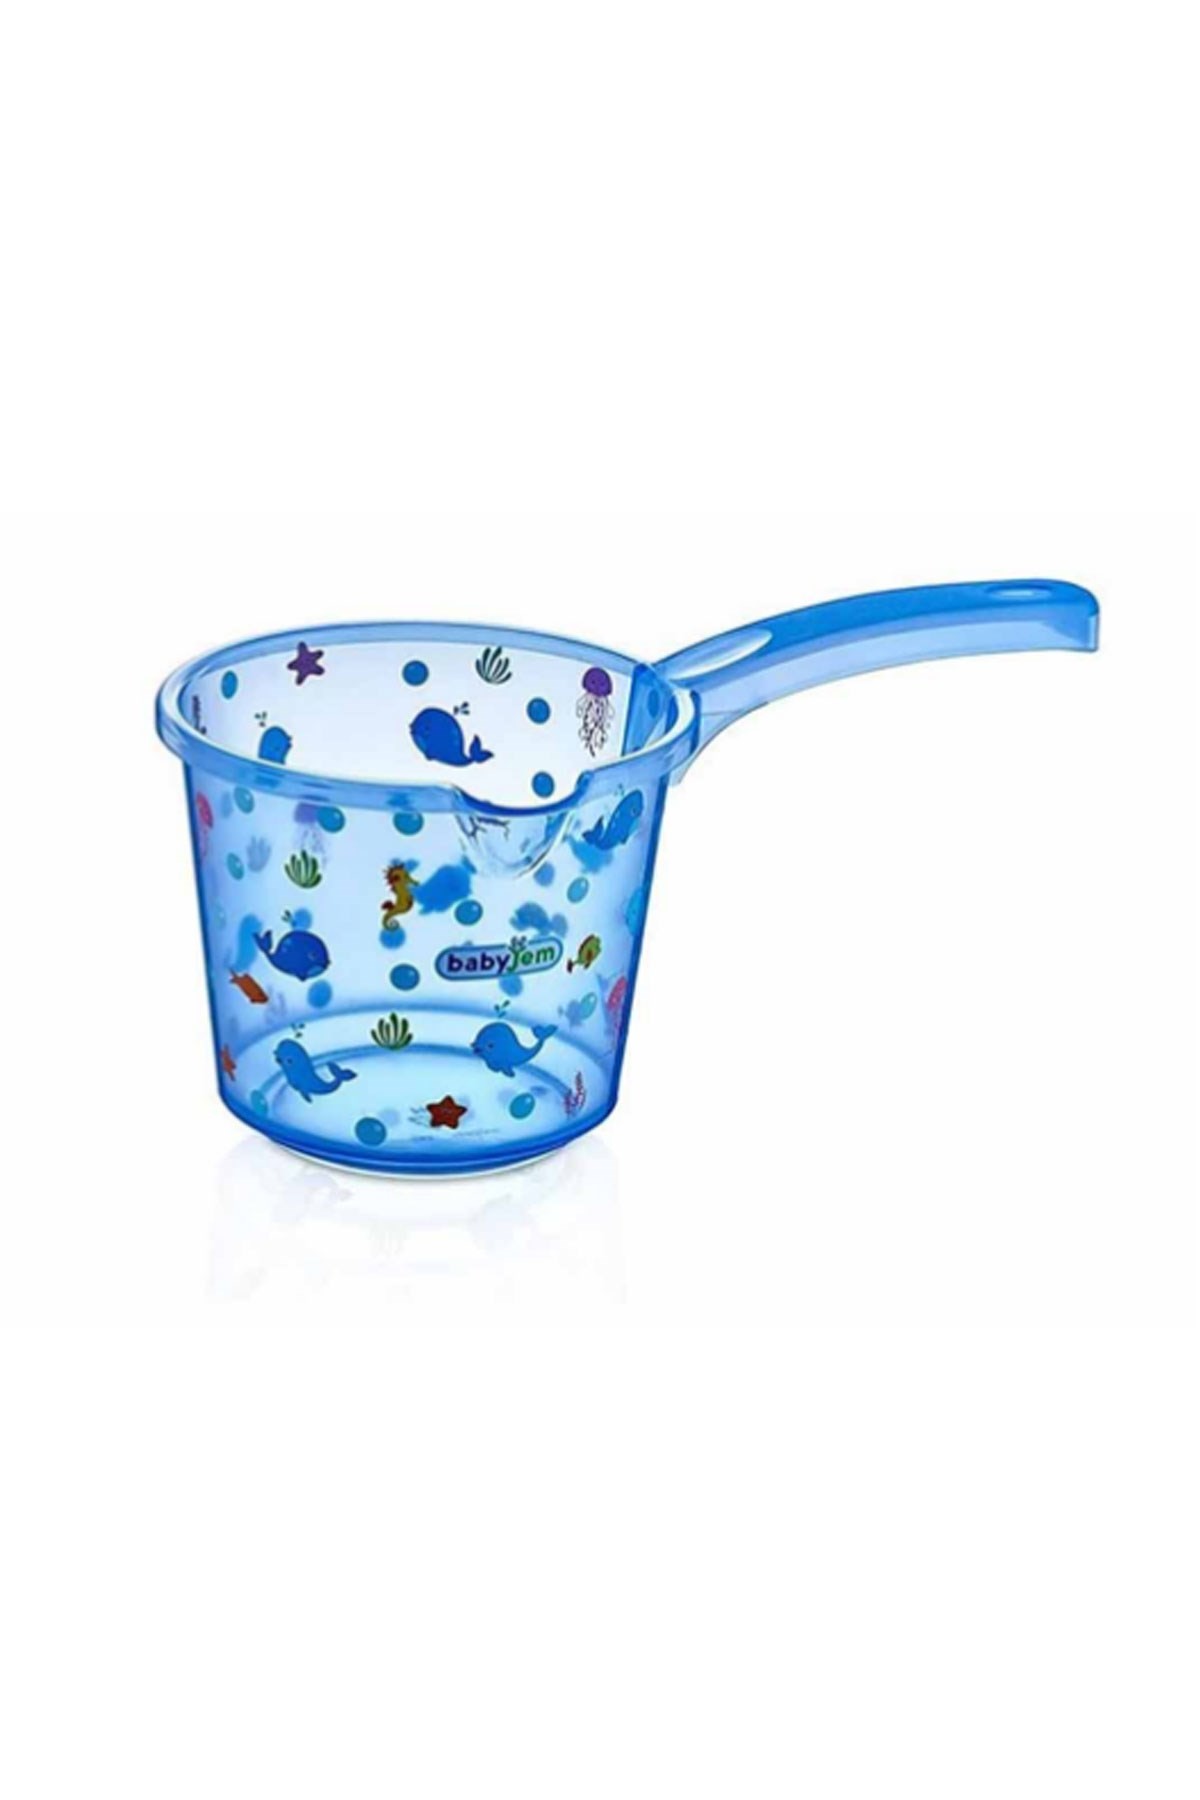 Babyjem Bebek Banyo Maşrapası Şeffaf Desenli Mavi